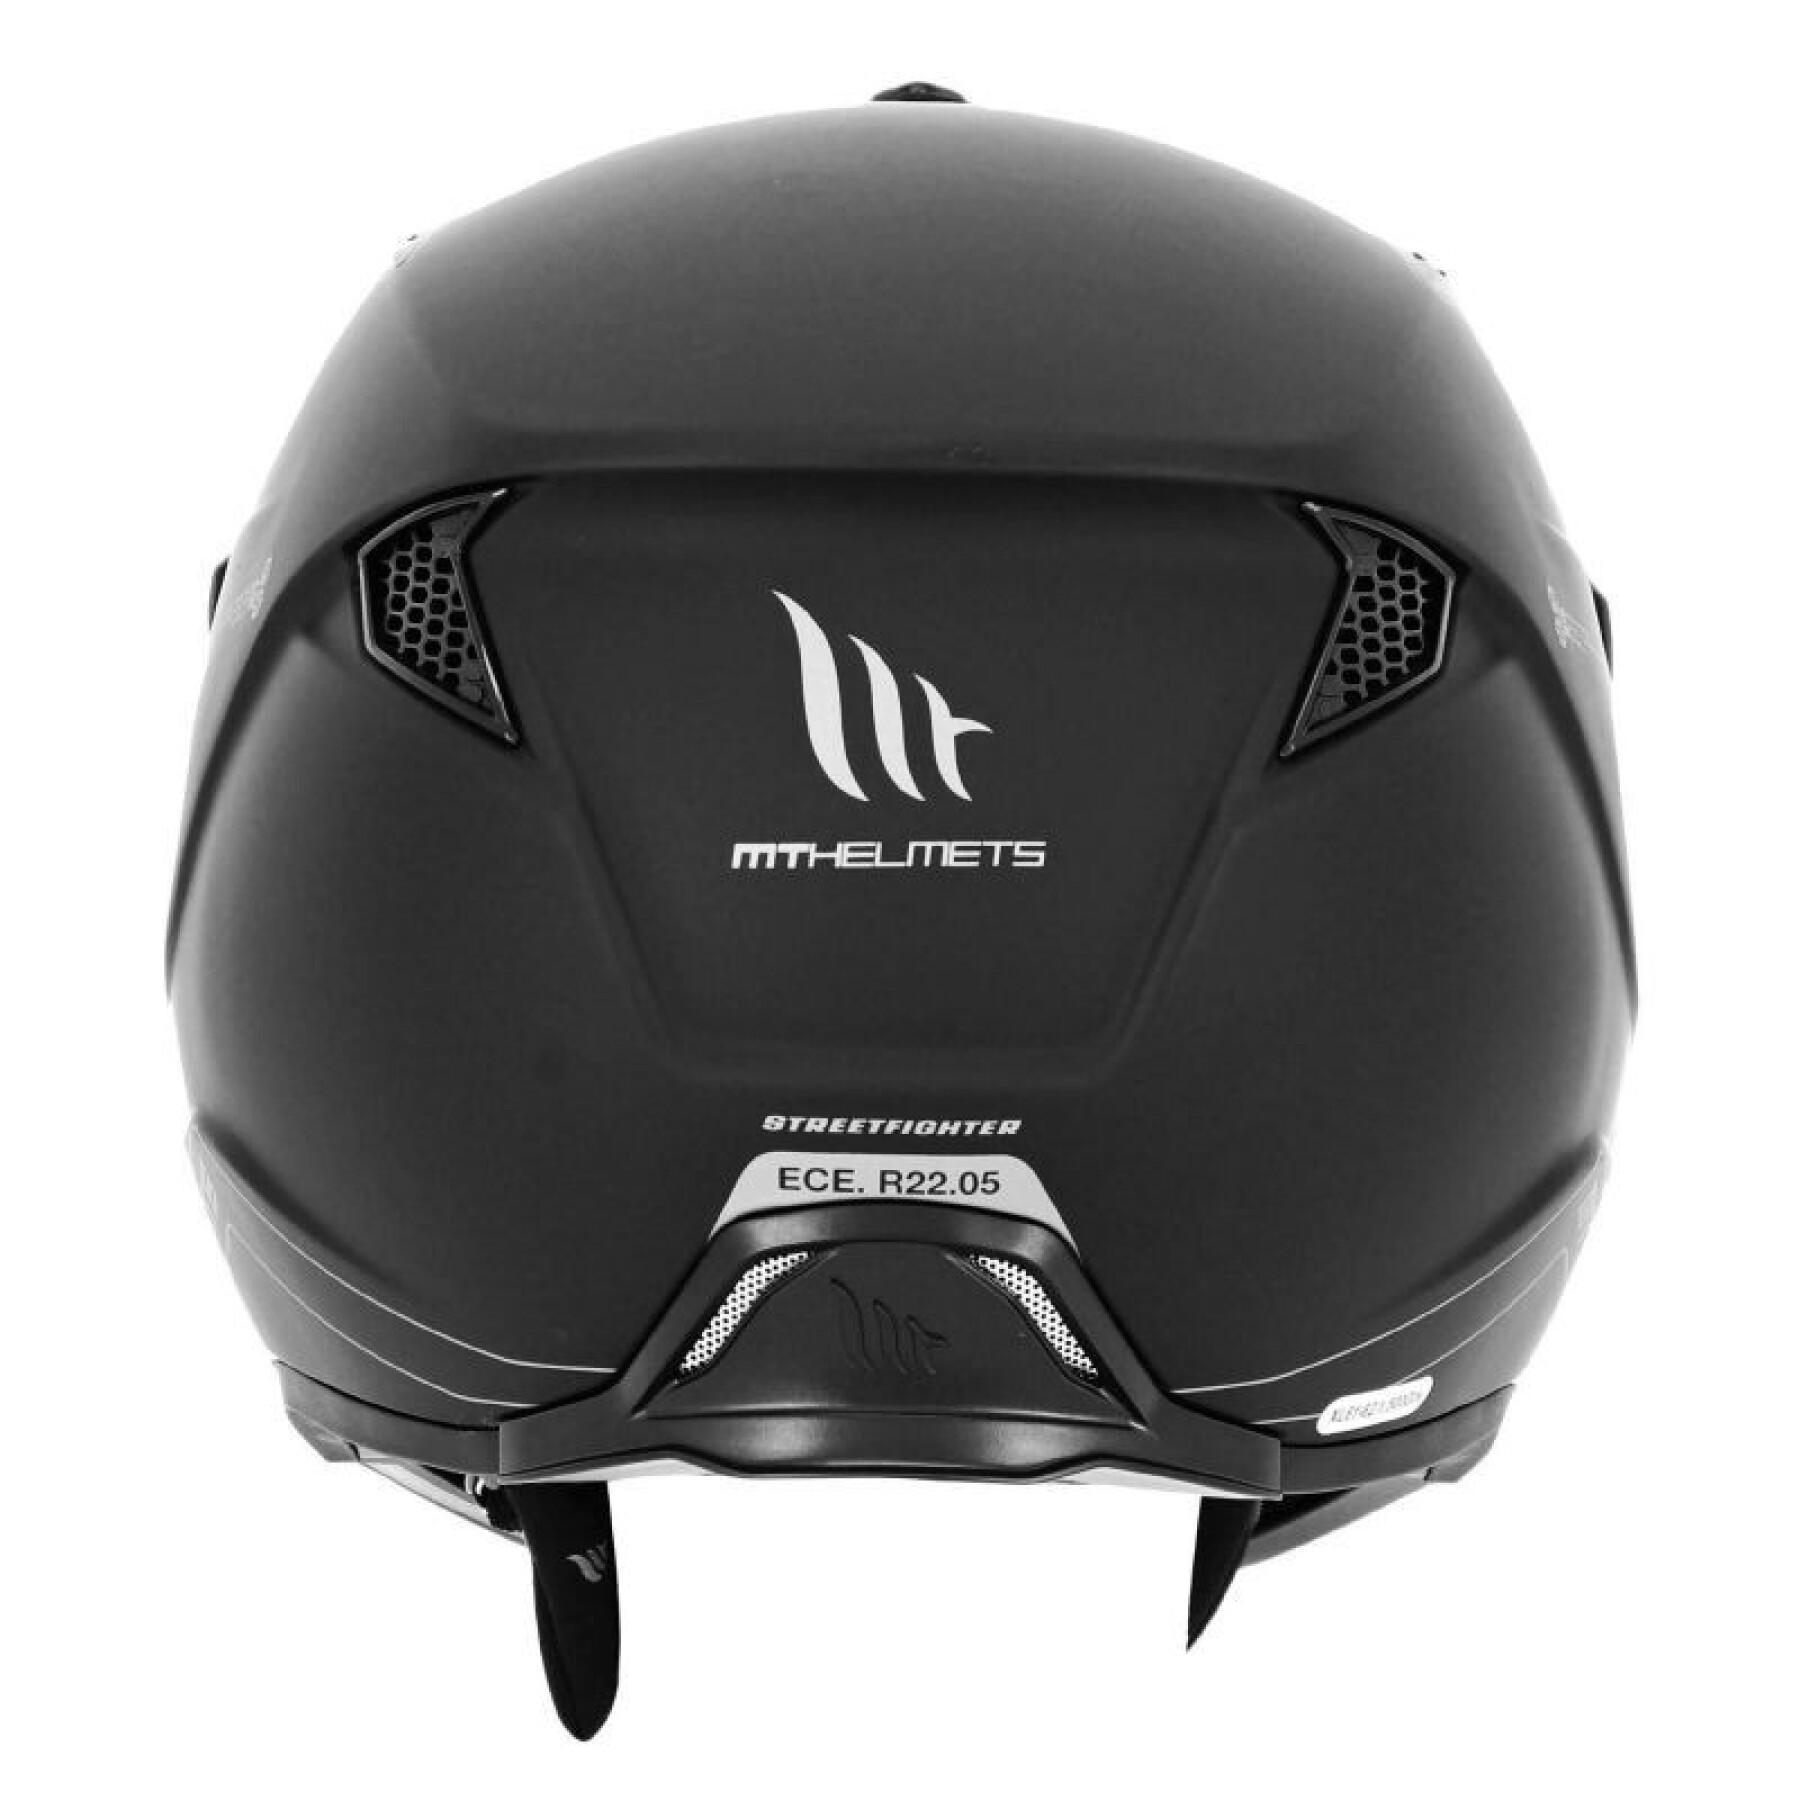 Odwracalny kask pełnotwarzowy z odpinanym paskiem pod brodą MT Helmets Trial Streetfighter SV